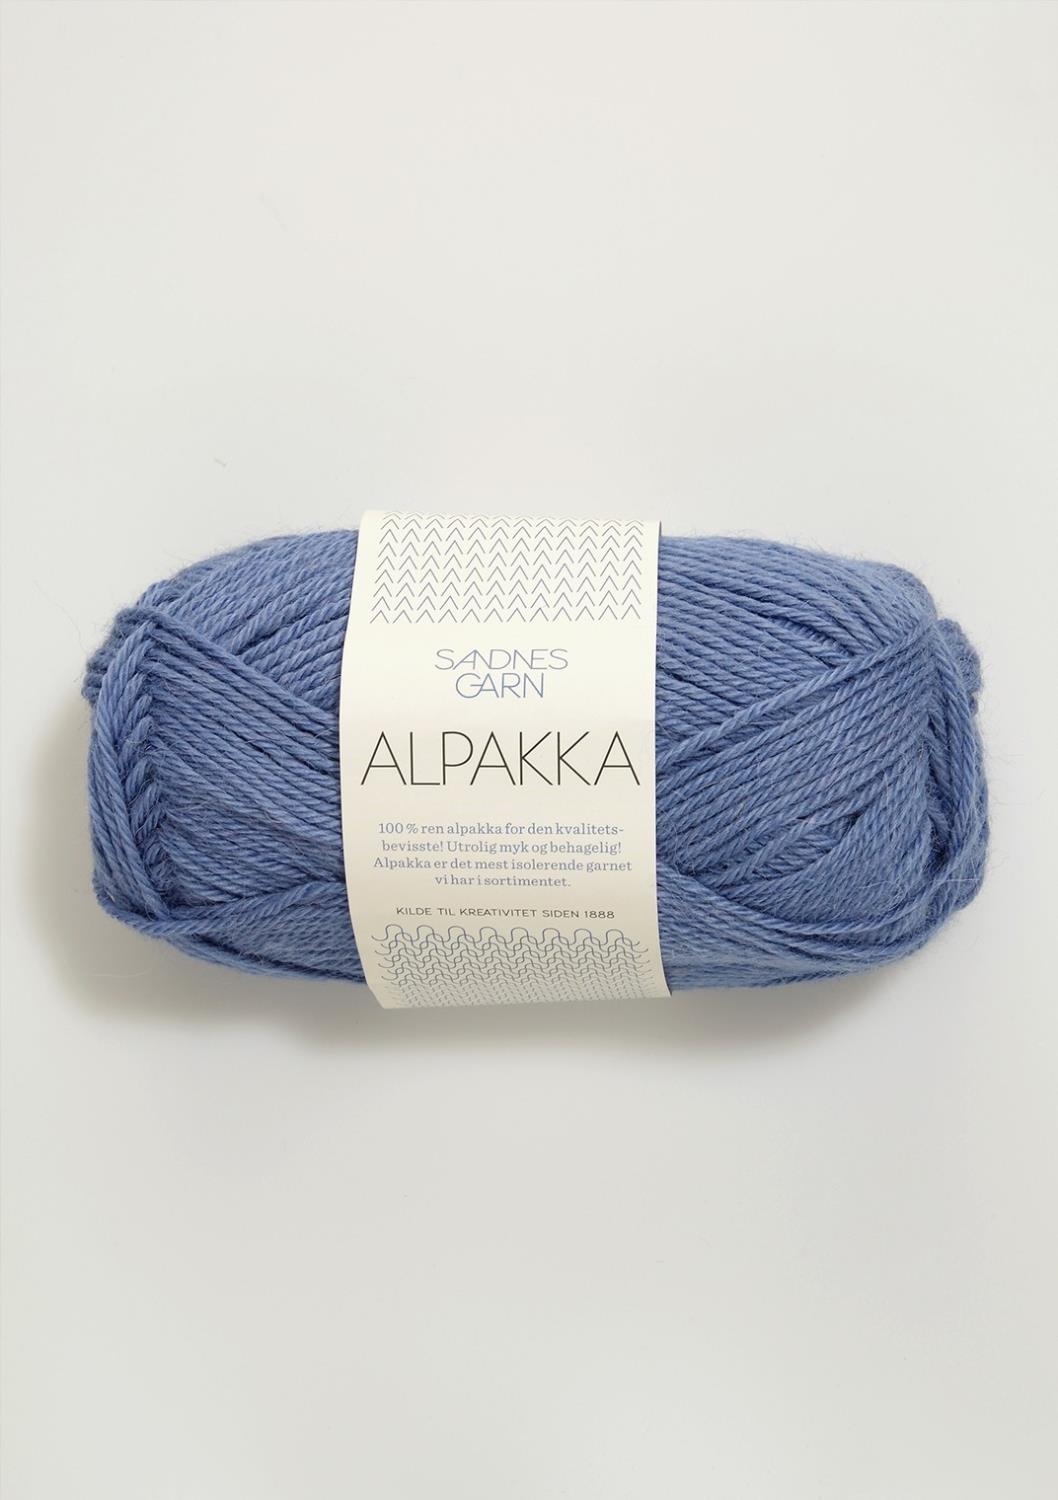 Alpakka Sandnes 5834 - Lavendel